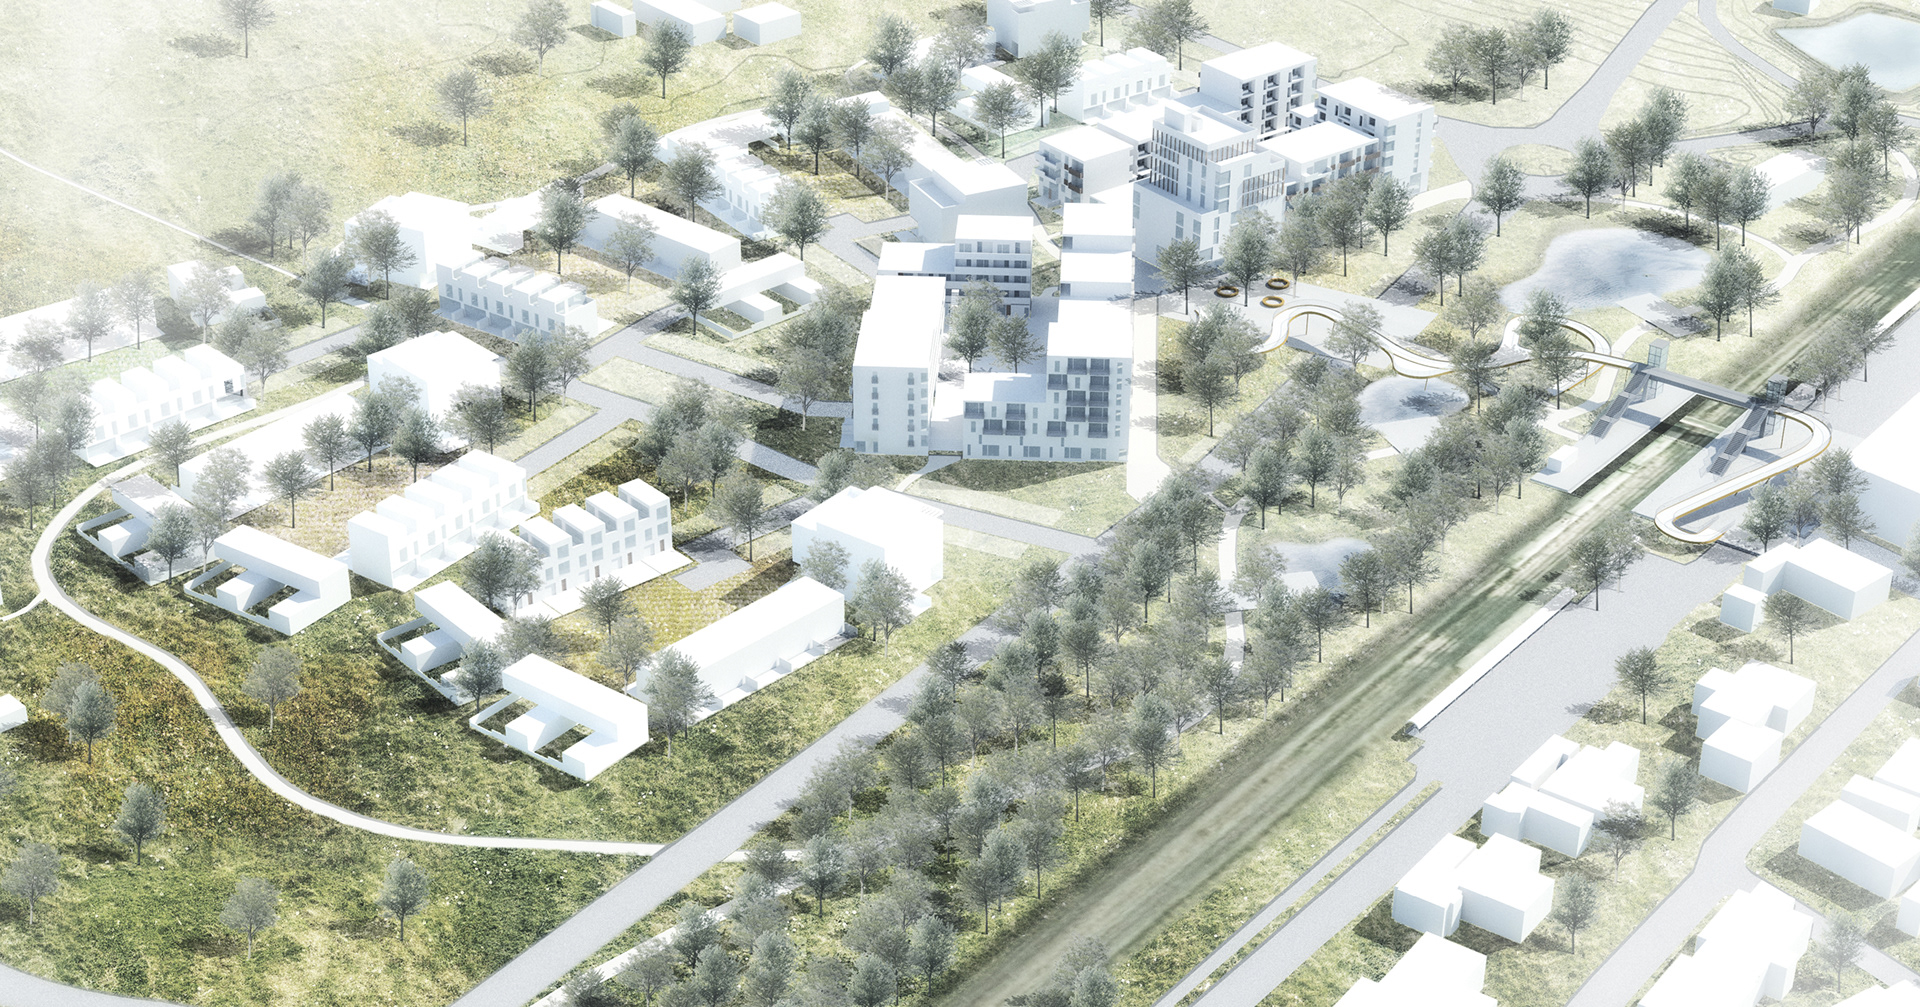 Foto: visualisering af projekt i Støvring Ådale